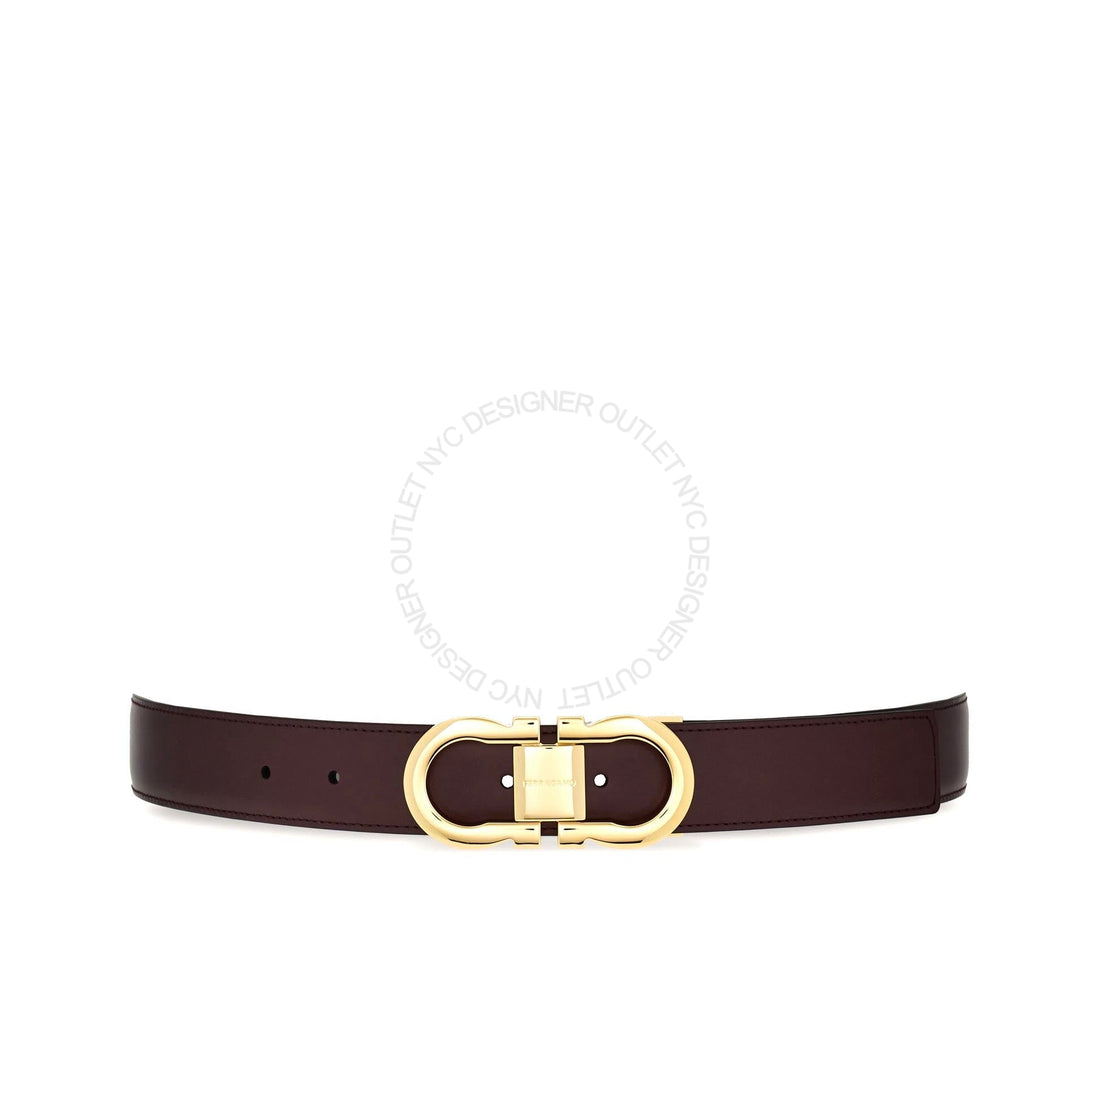 Ferragamo Black/Maroon Leather Adjustable belt